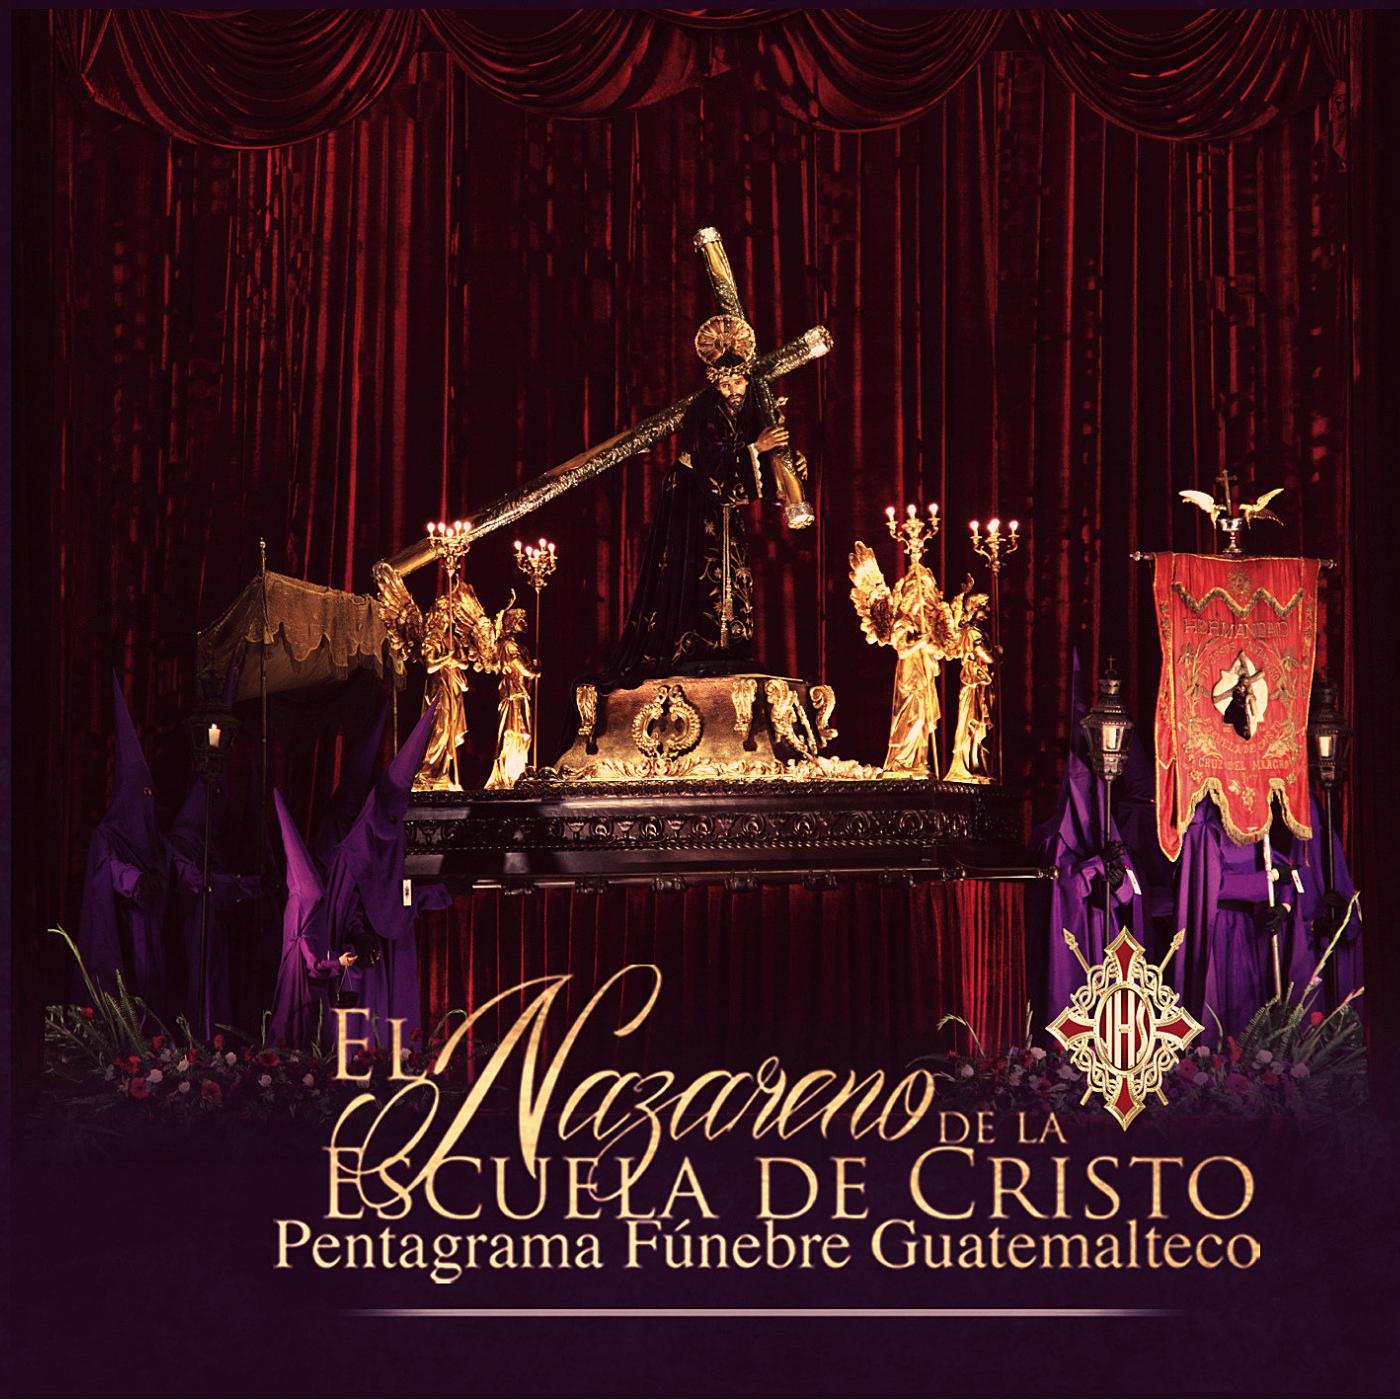 Pentagrama Fu nebre Guatemalteco el Nazareno de la Escuela de Cristo